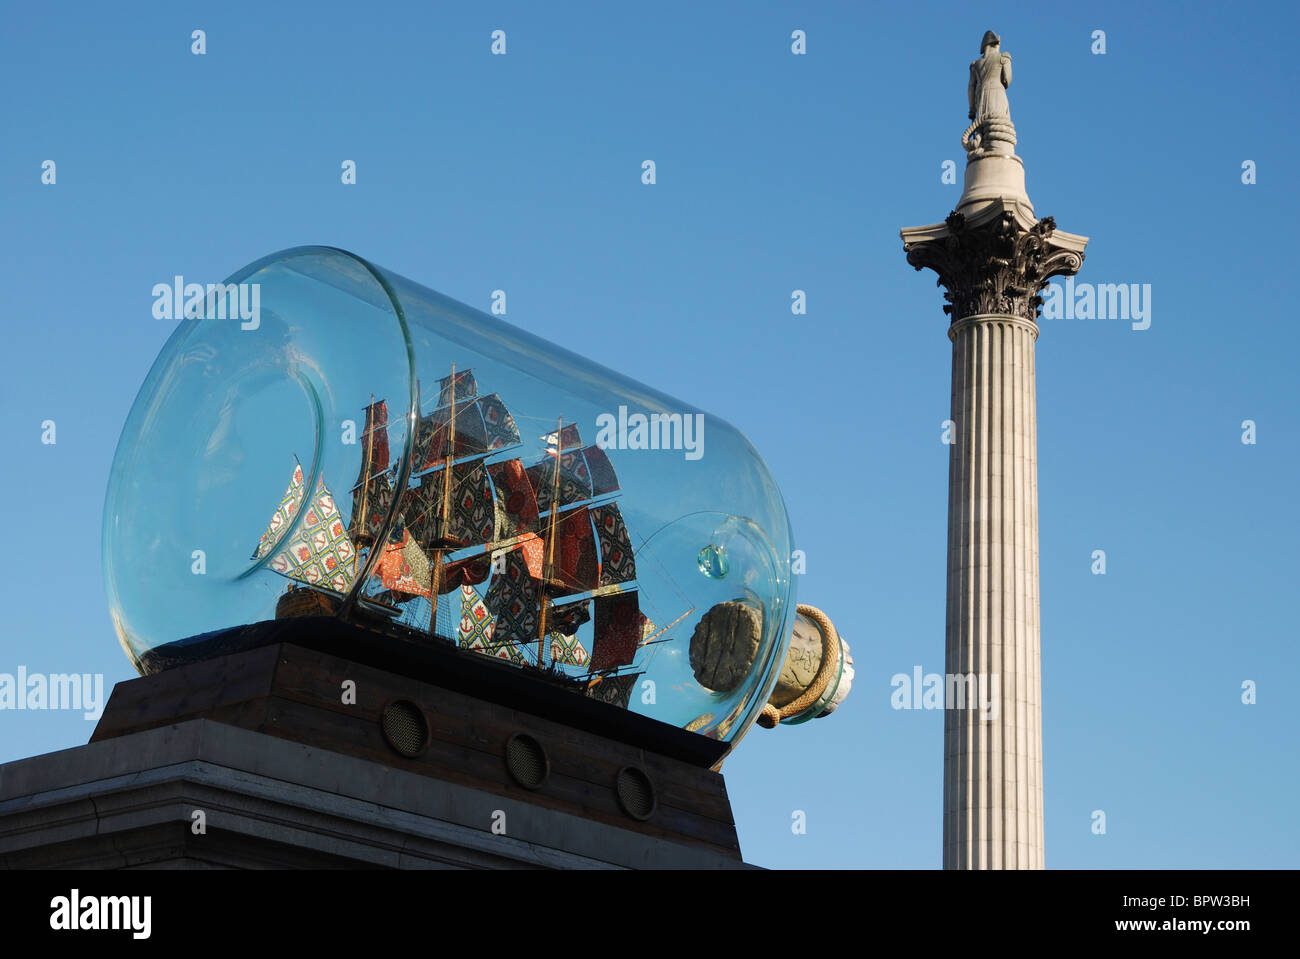 Nelsons Schiff in der Flasche von Yinka Shonibare, auf dem vierten Sockel des Trafalgar Square, London, England. Stockfoto